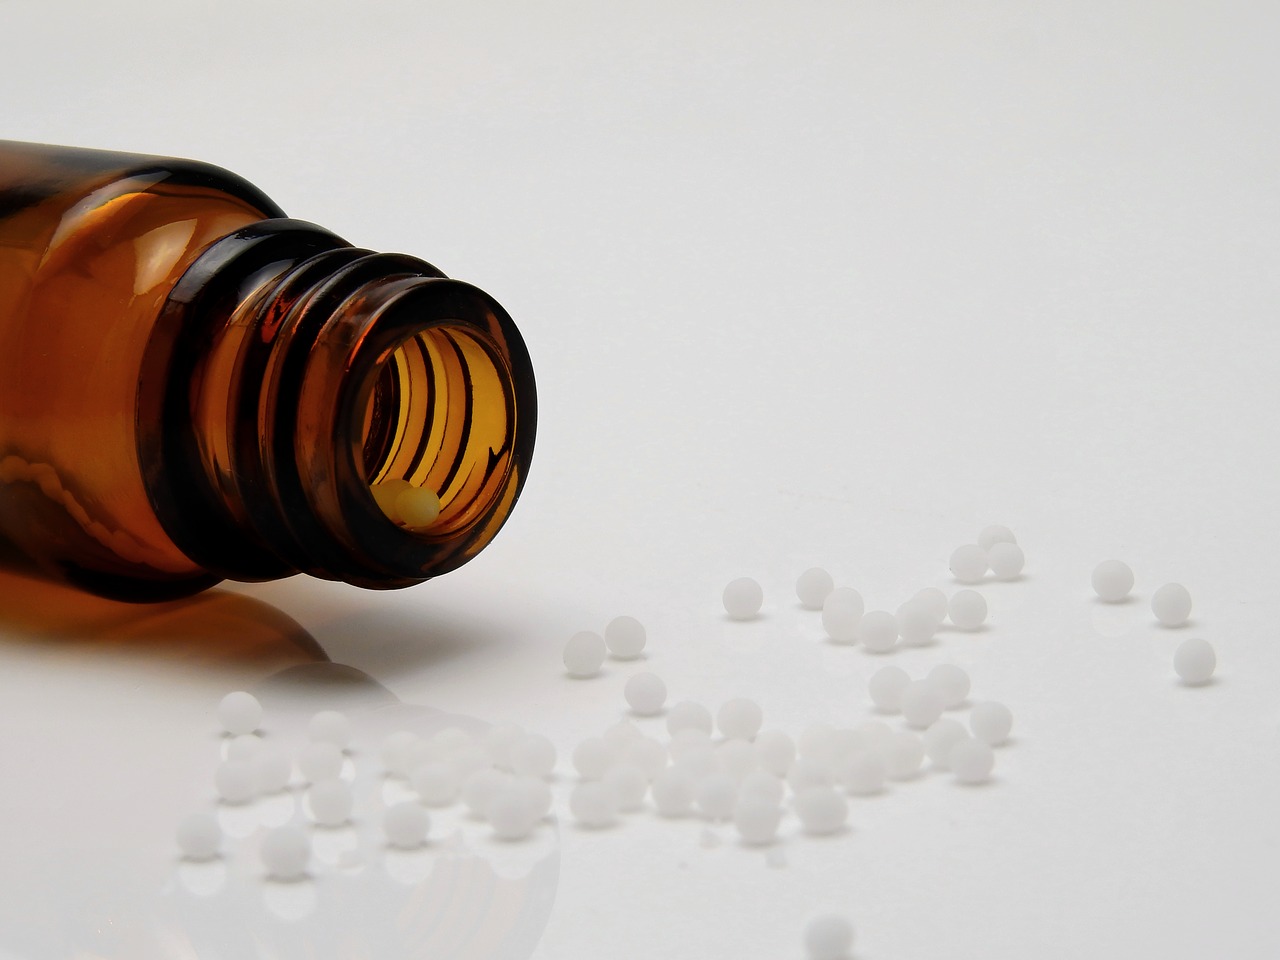 A homeopatia tem como princípio ajudar o indivíduo na manutenção do bem-estar